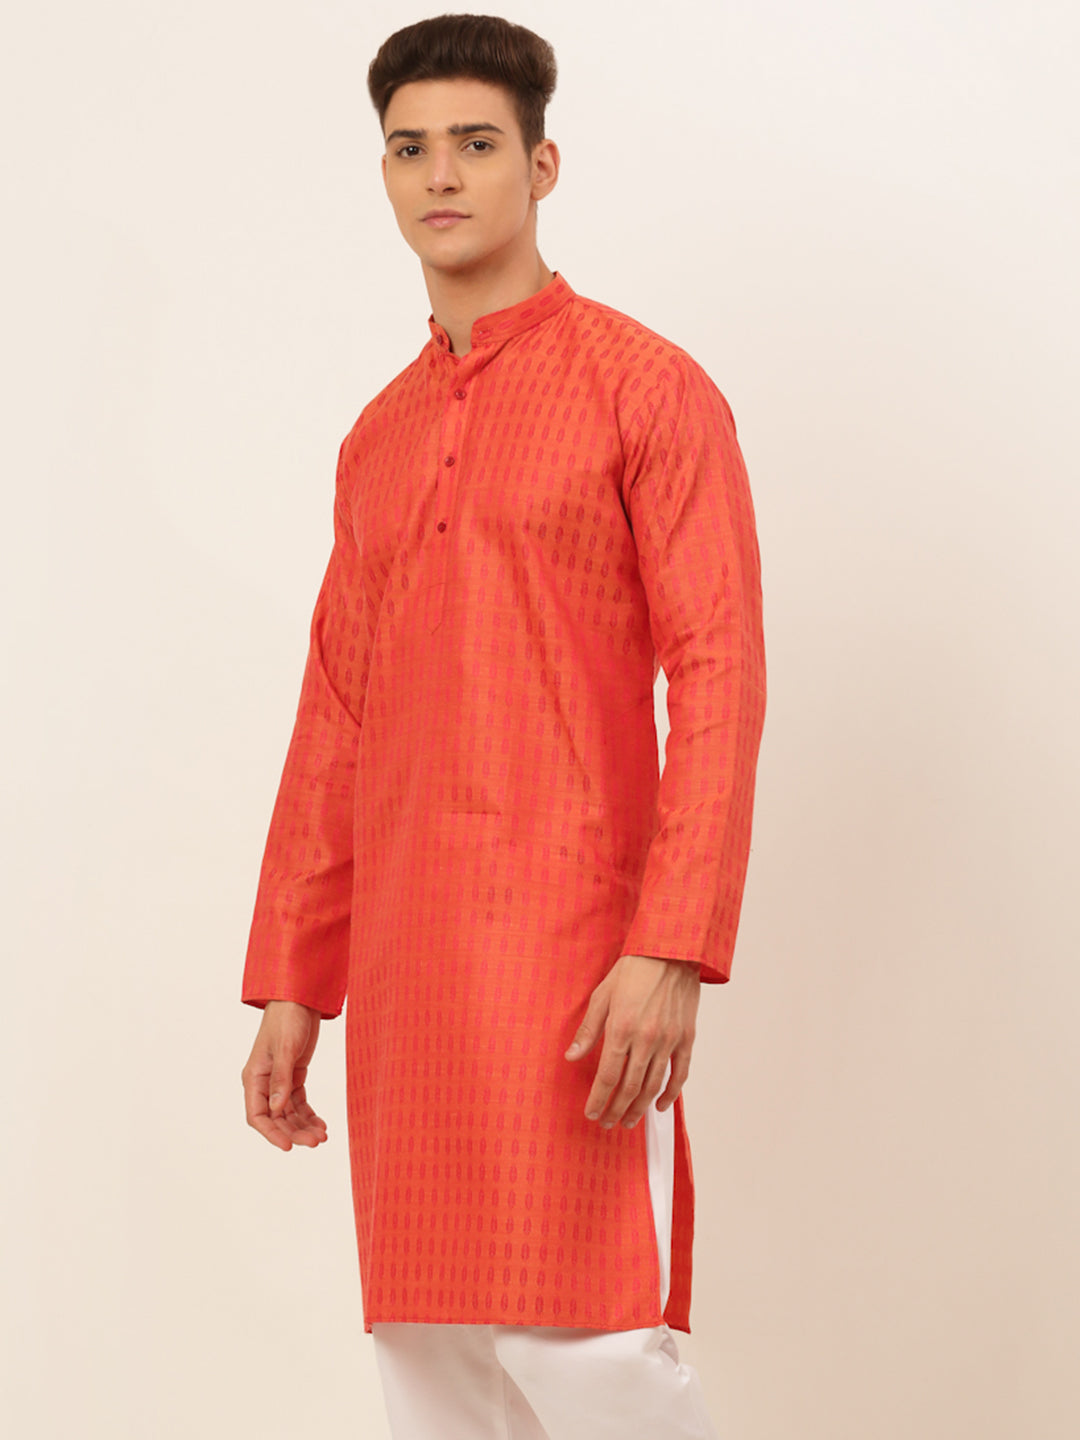 Men's Red Woven Design Kurta Only ( Ko 675 Red ) - Virat Fashions